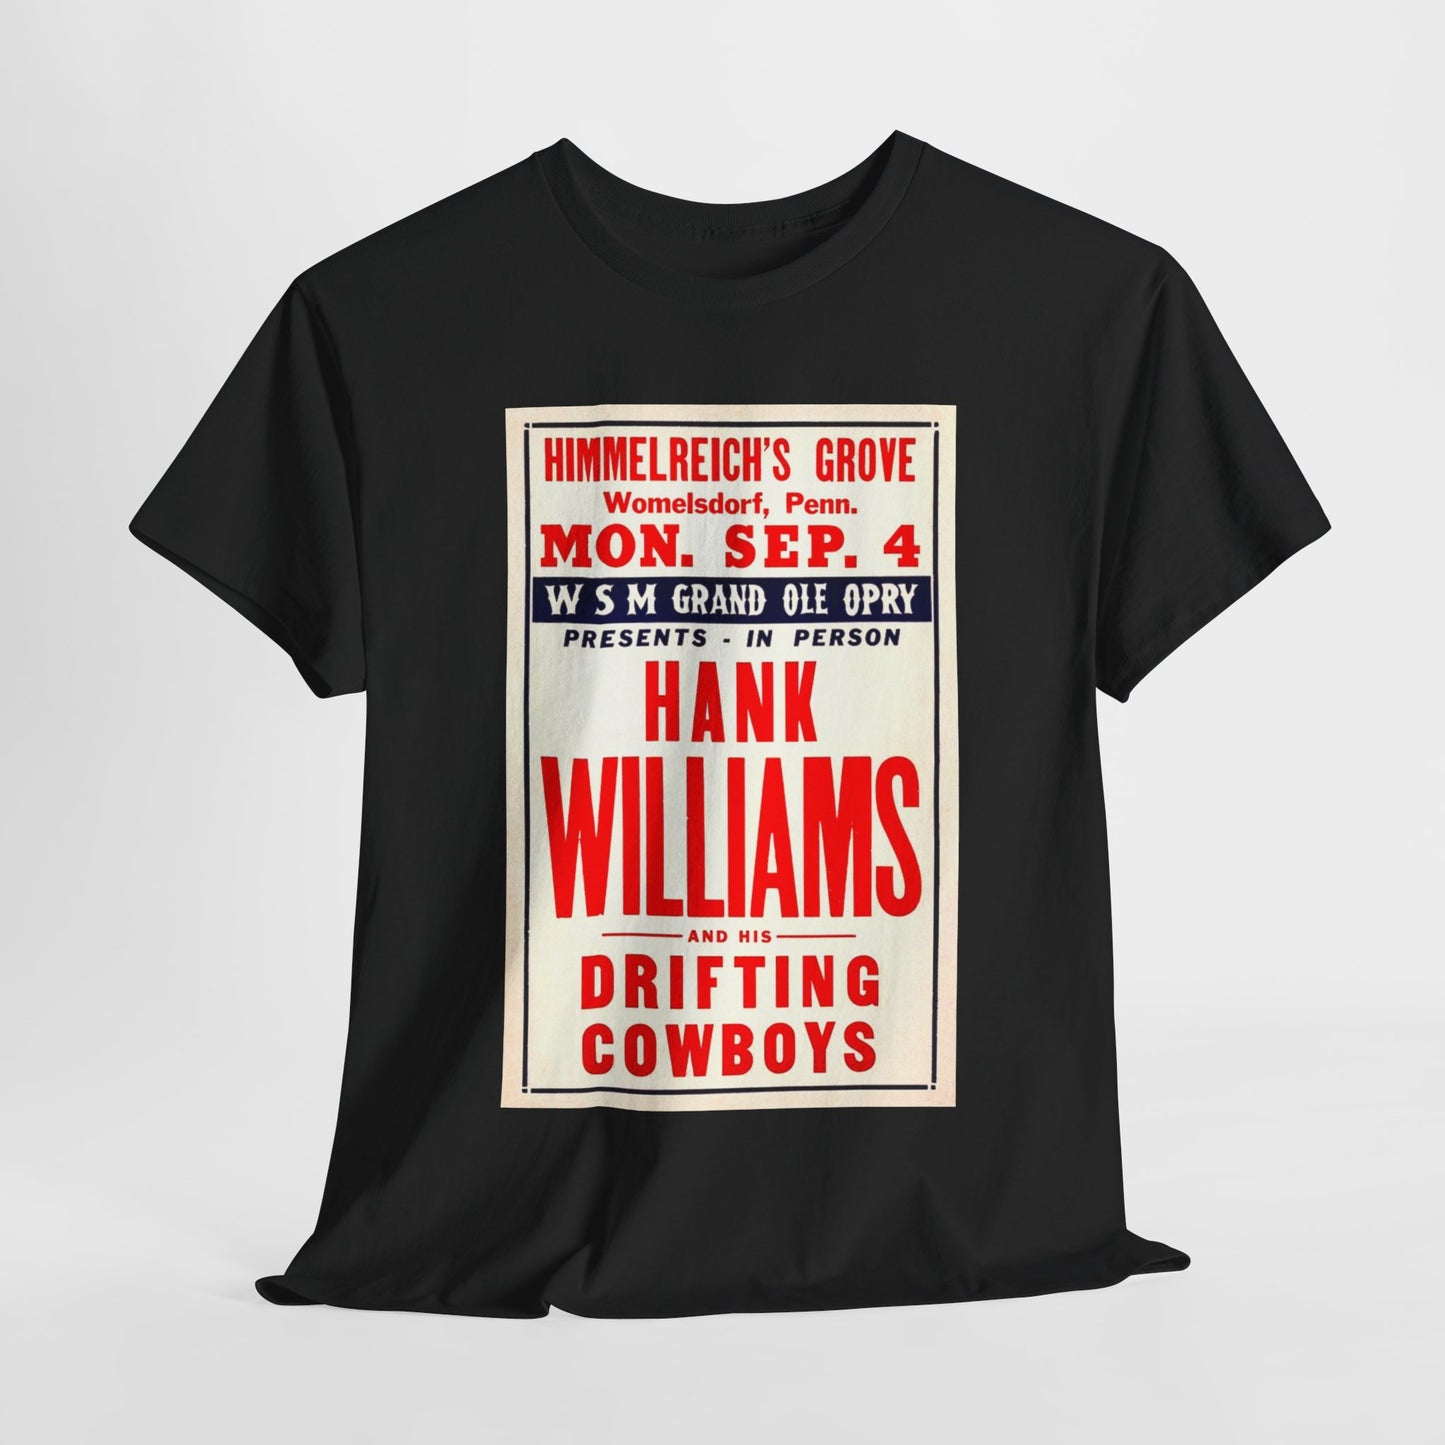 Concert Poster Tee #146: Hank Williams